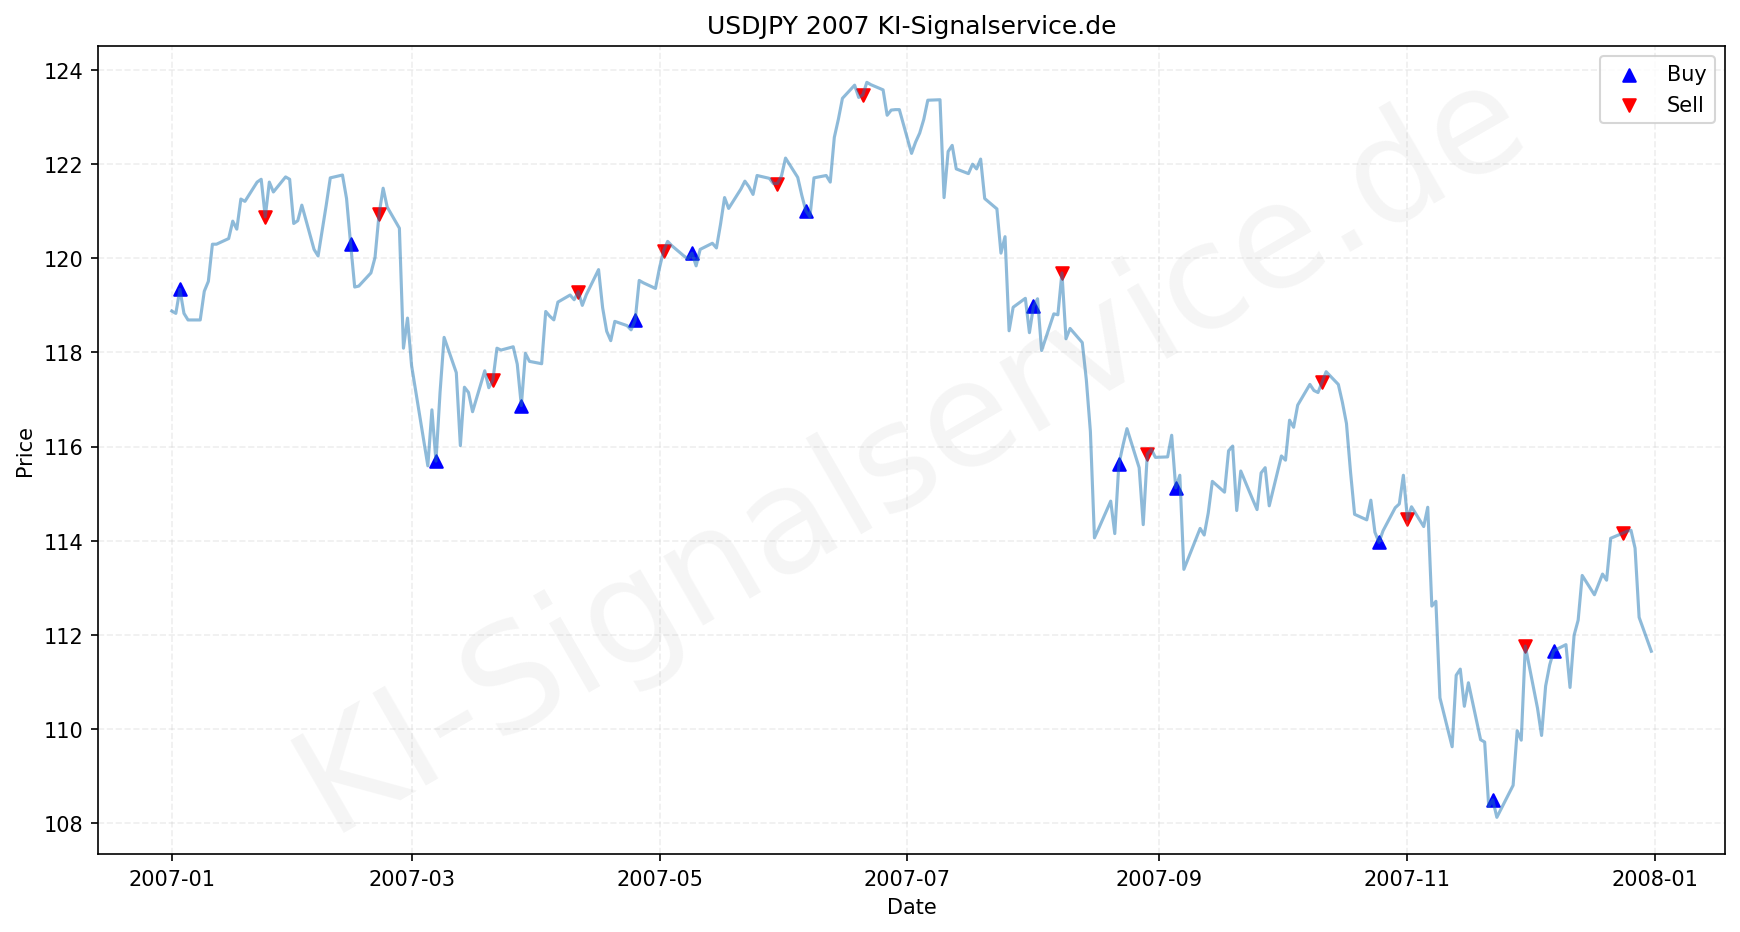 USDJPY Chart - KI Tradingsignale 2007